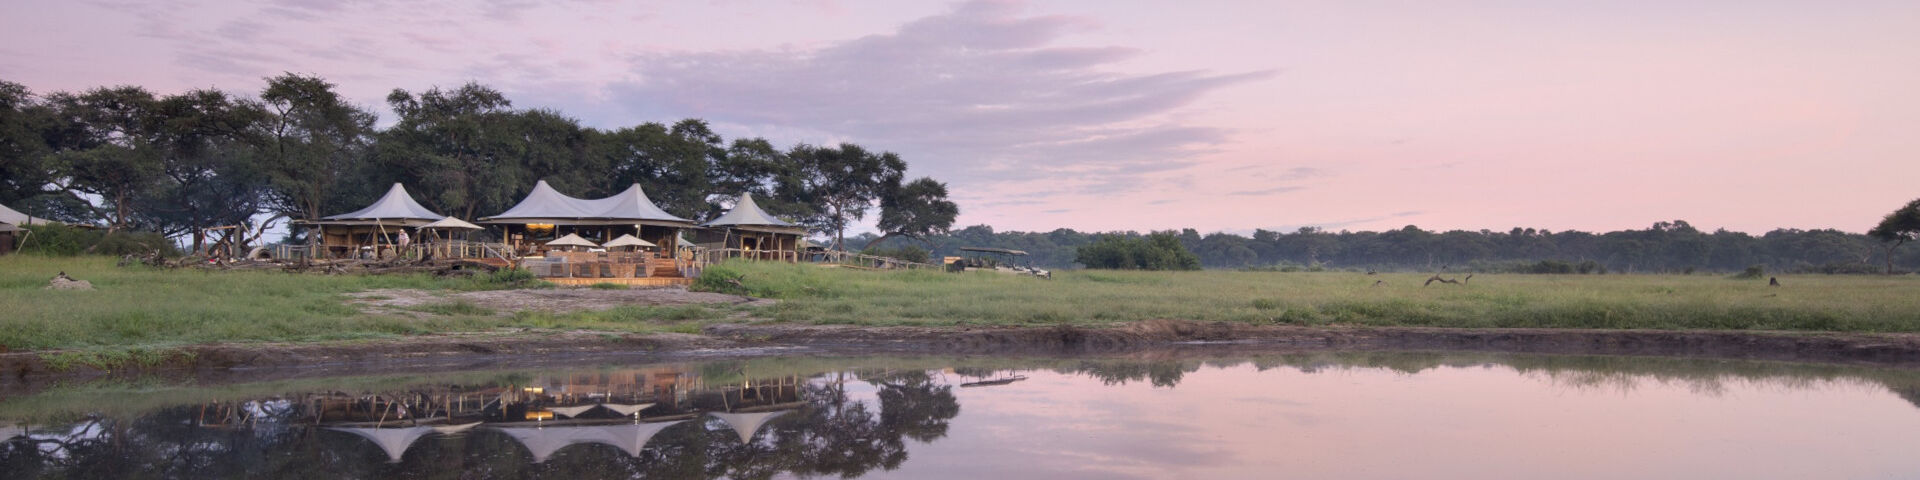 Somalisa Camp - Hwange National Park - Zimbabwe